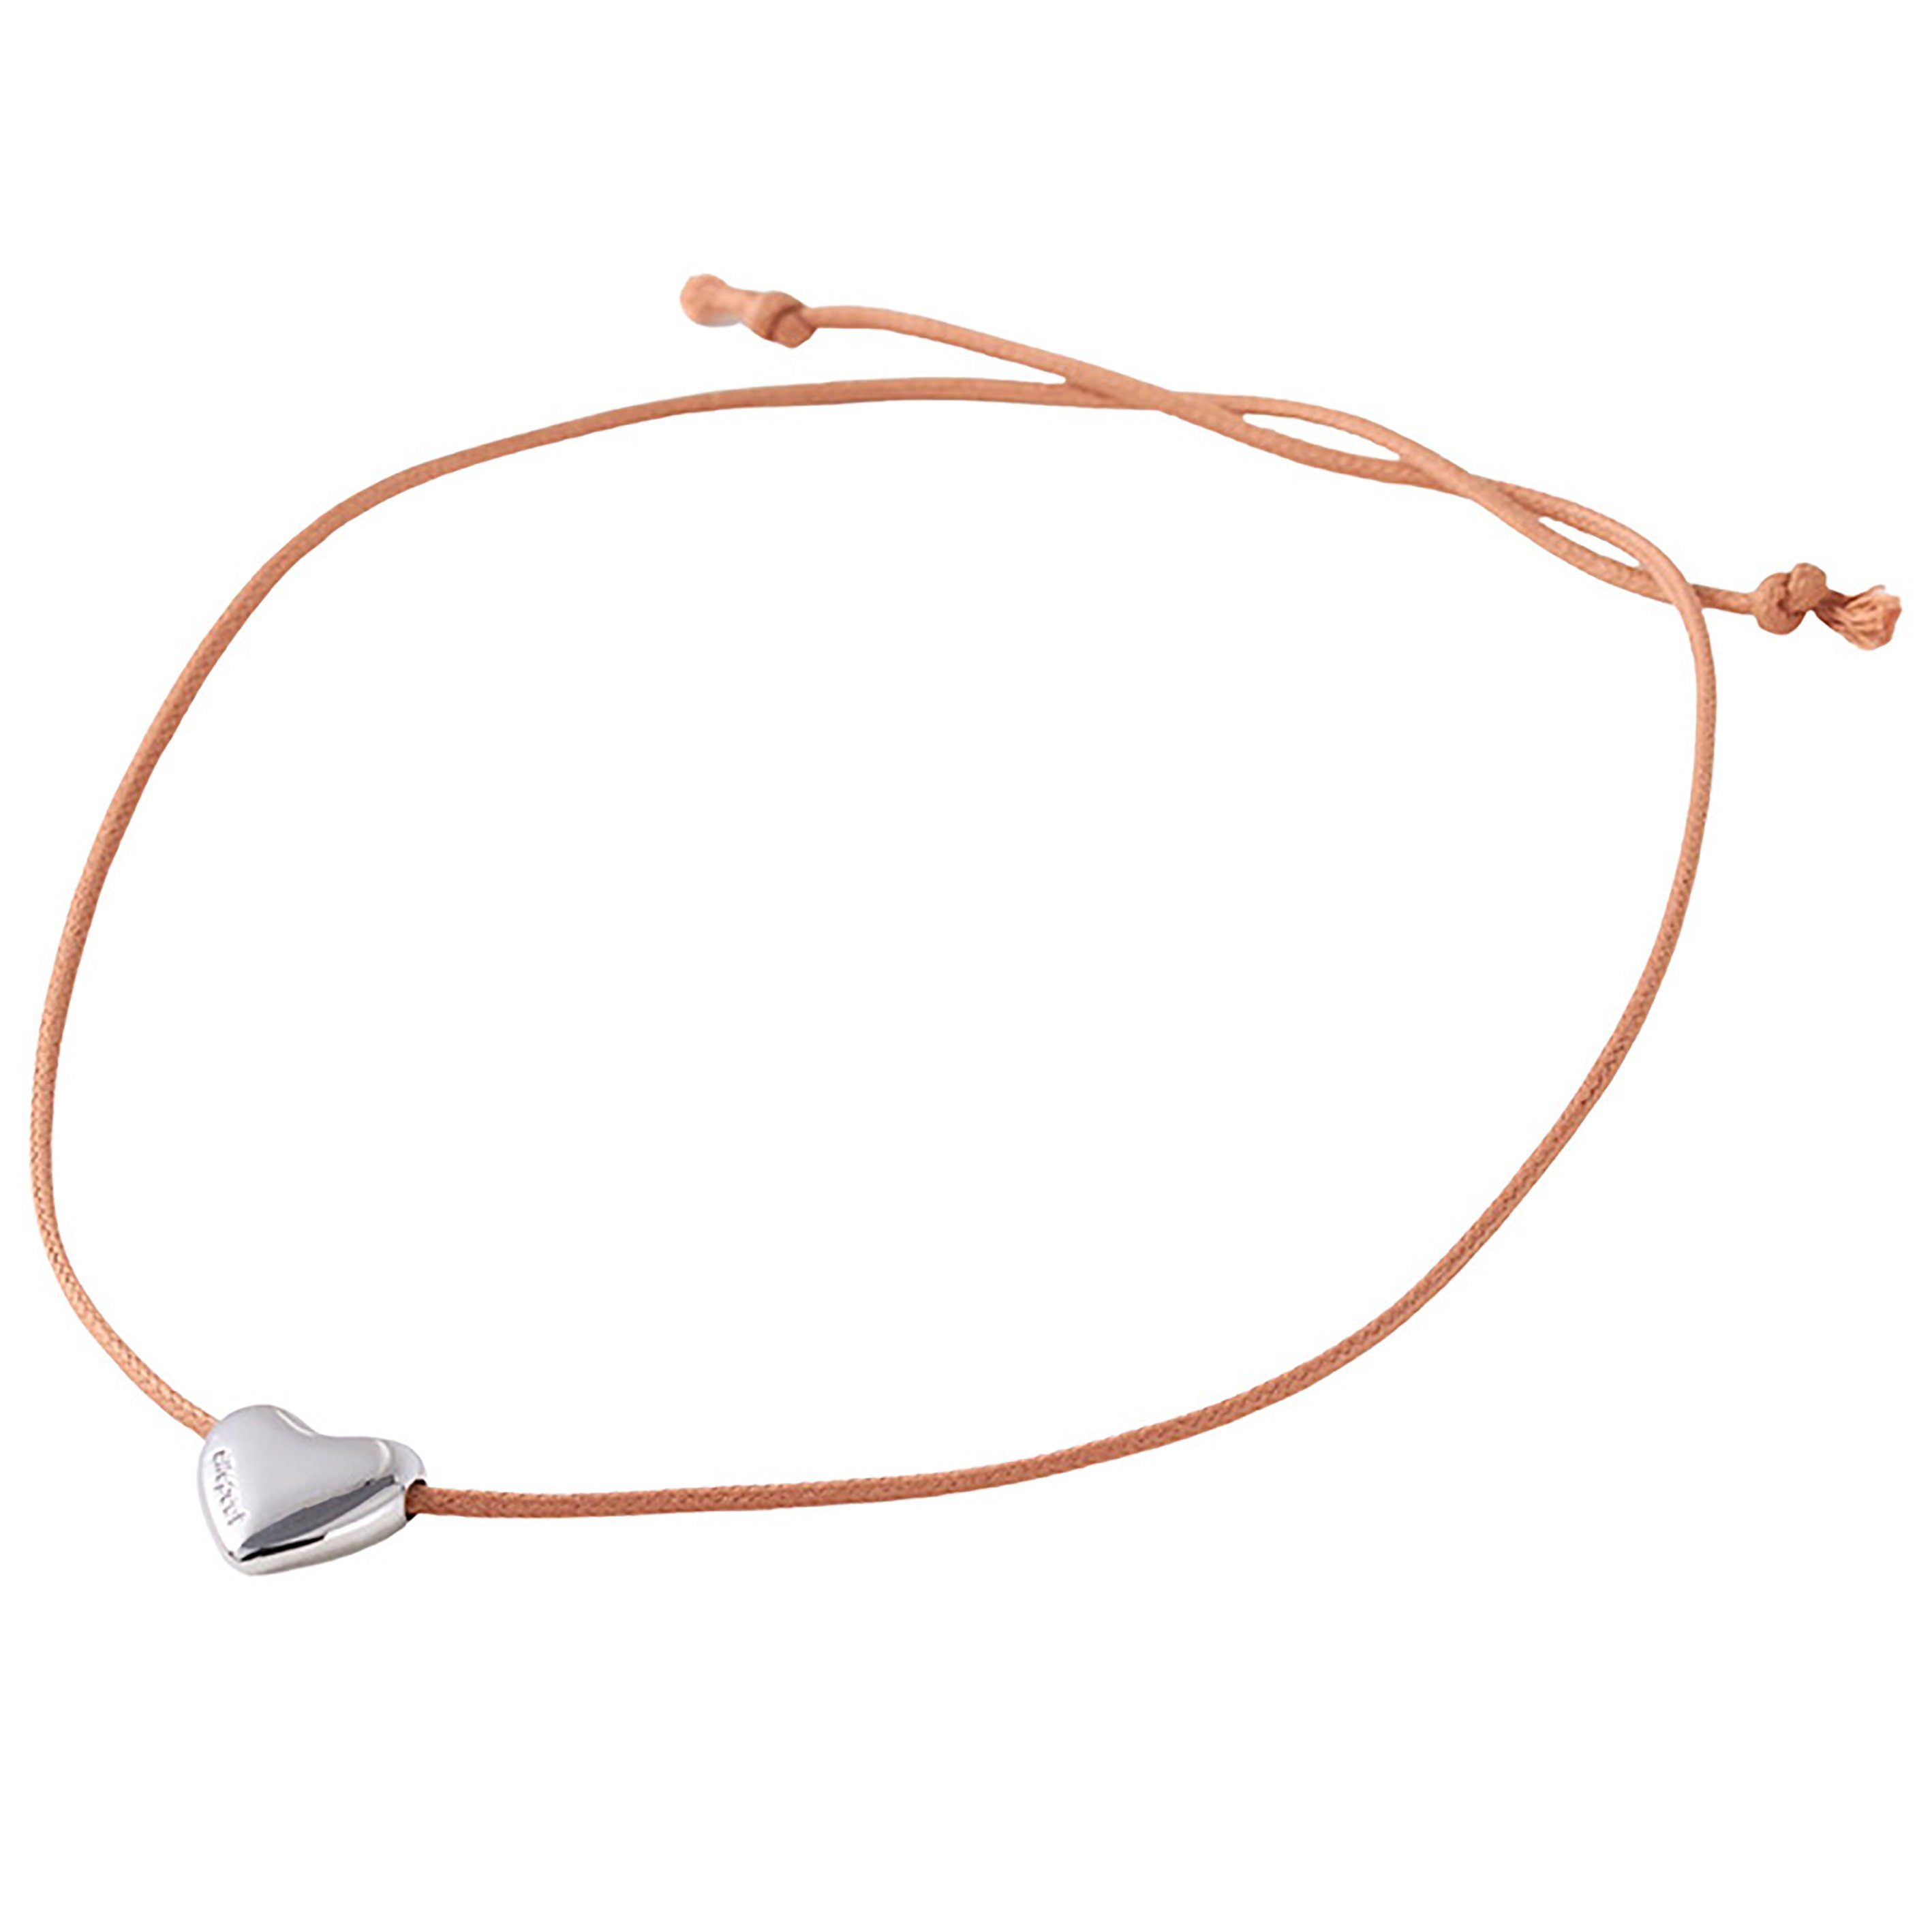 Tapferer Ping Charm-Kette Kreative Liebe Herz Kordelzug Halskette für Frauen